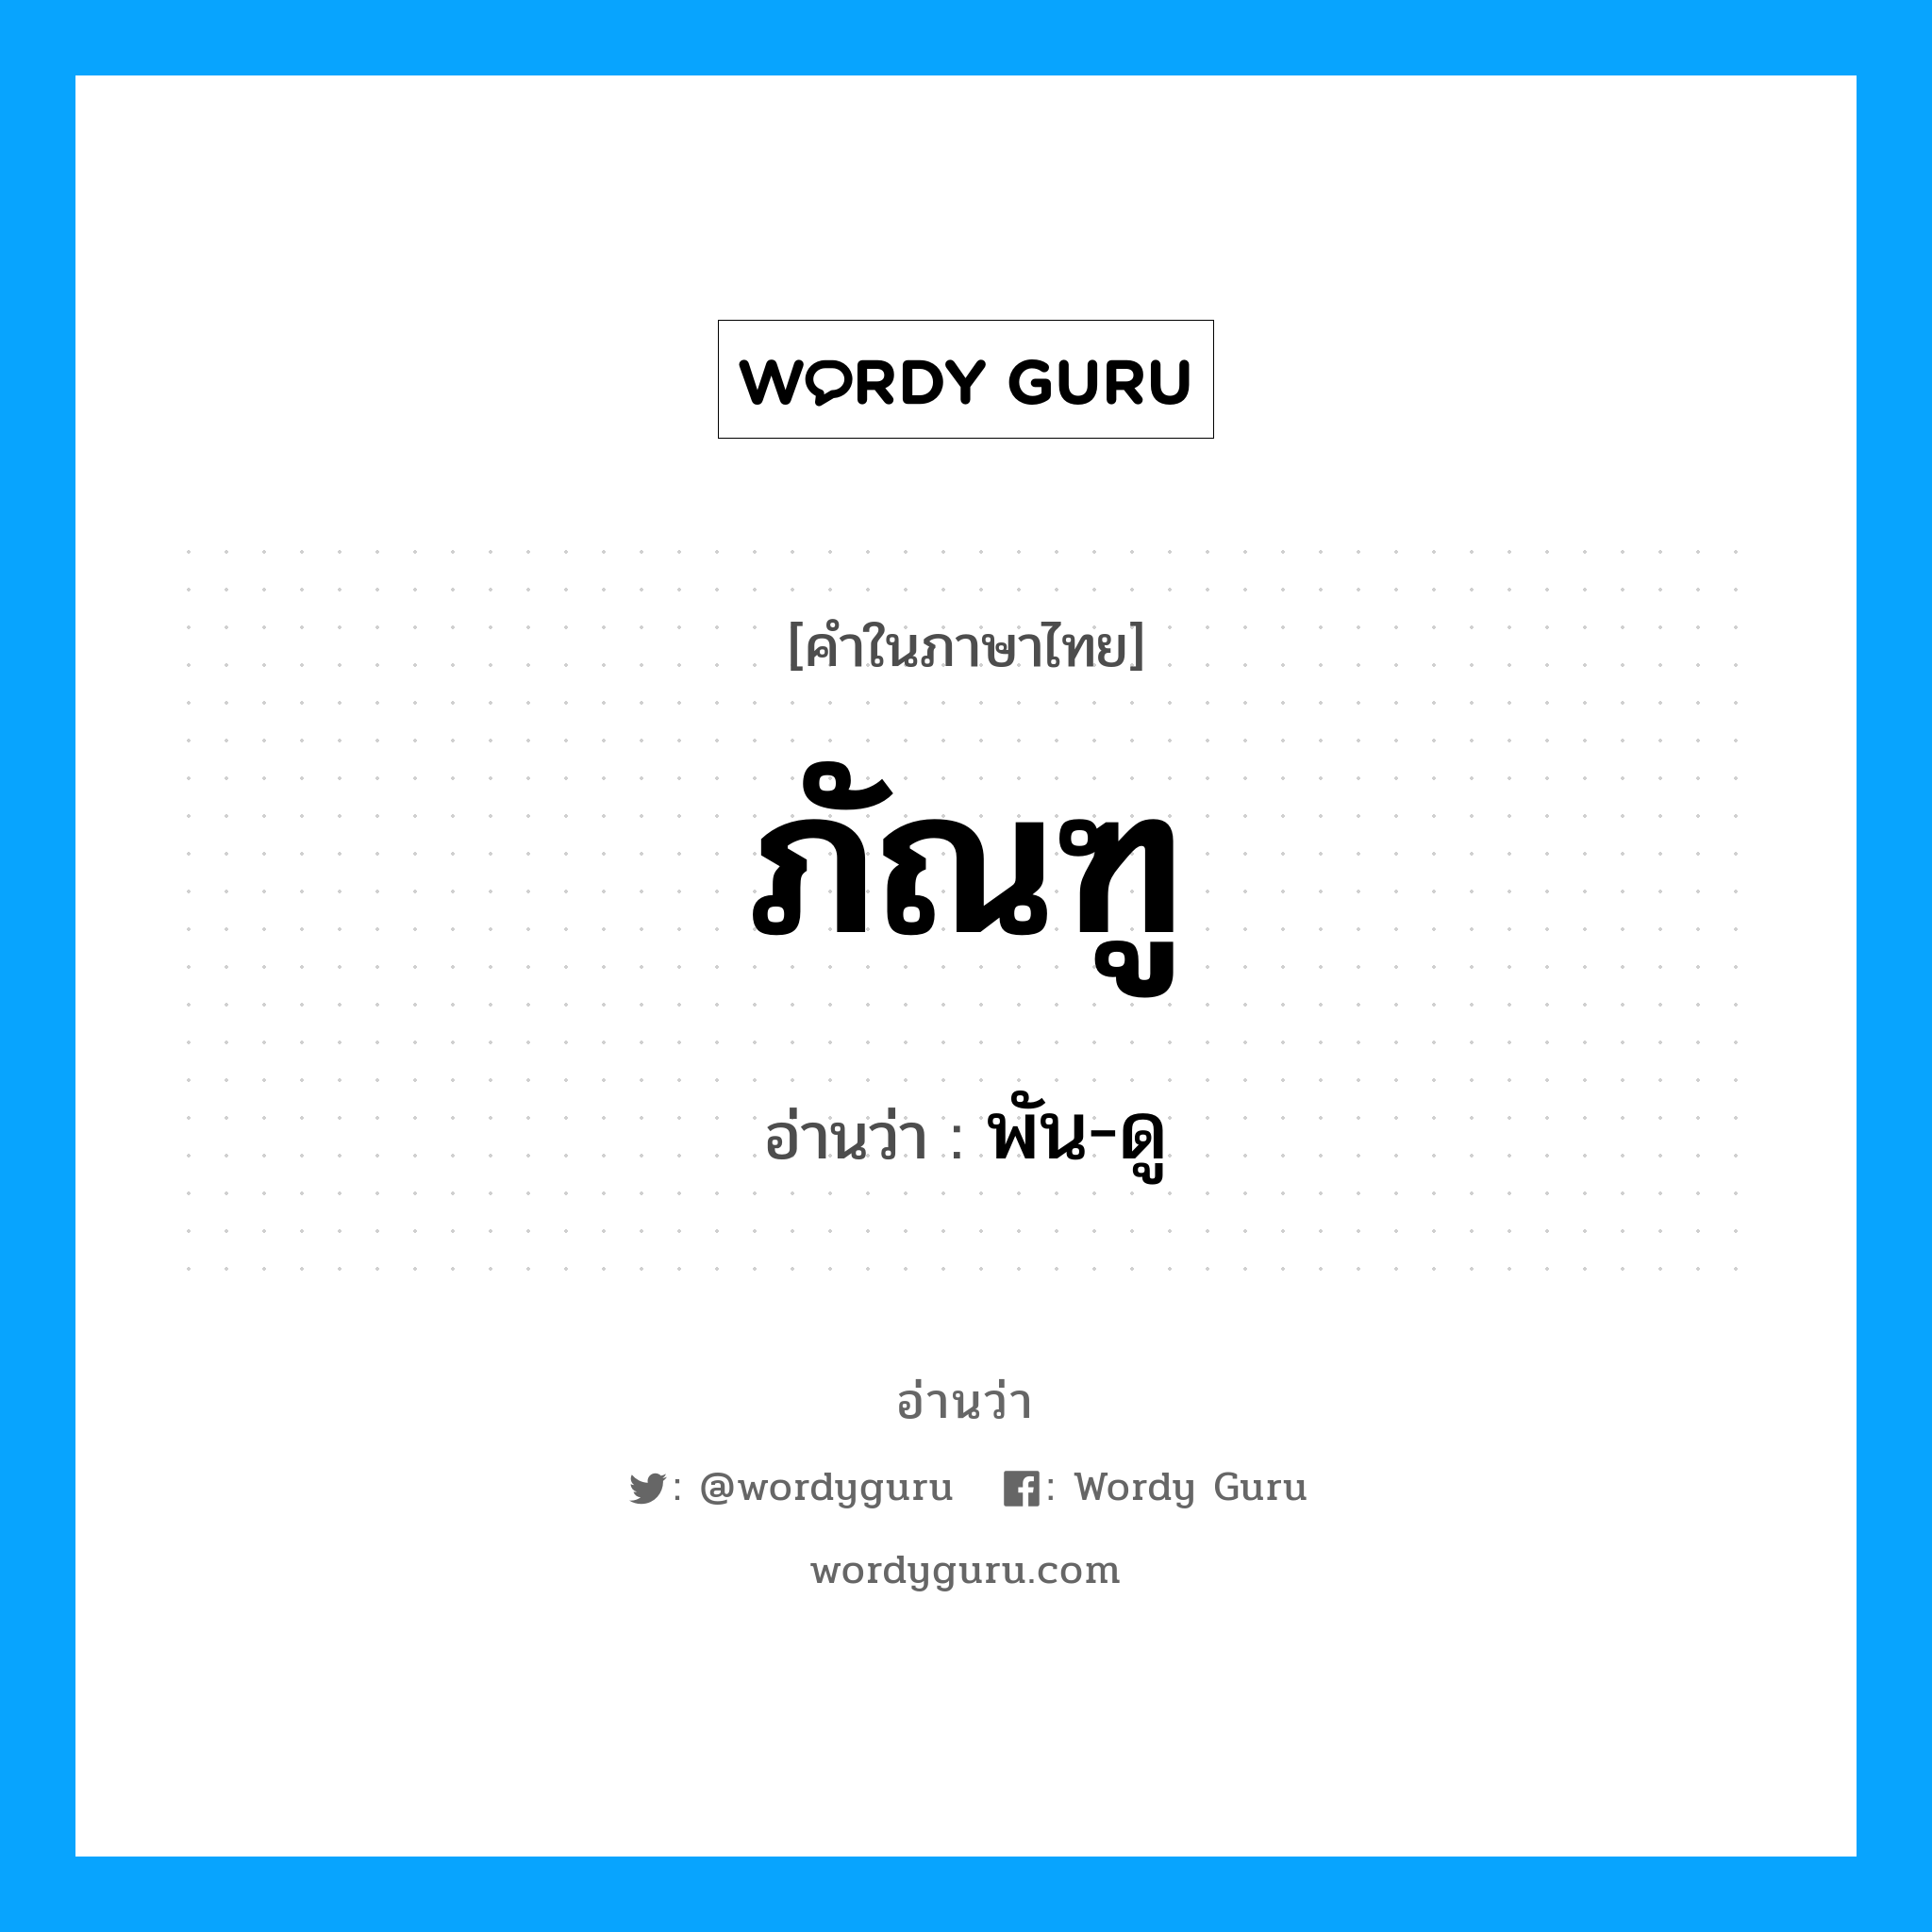 พัน-ดู เป็นคำอ่านของคำไหน?, คำในภาษาไทย พัน-ดู อ่านว่า ภัณฑู